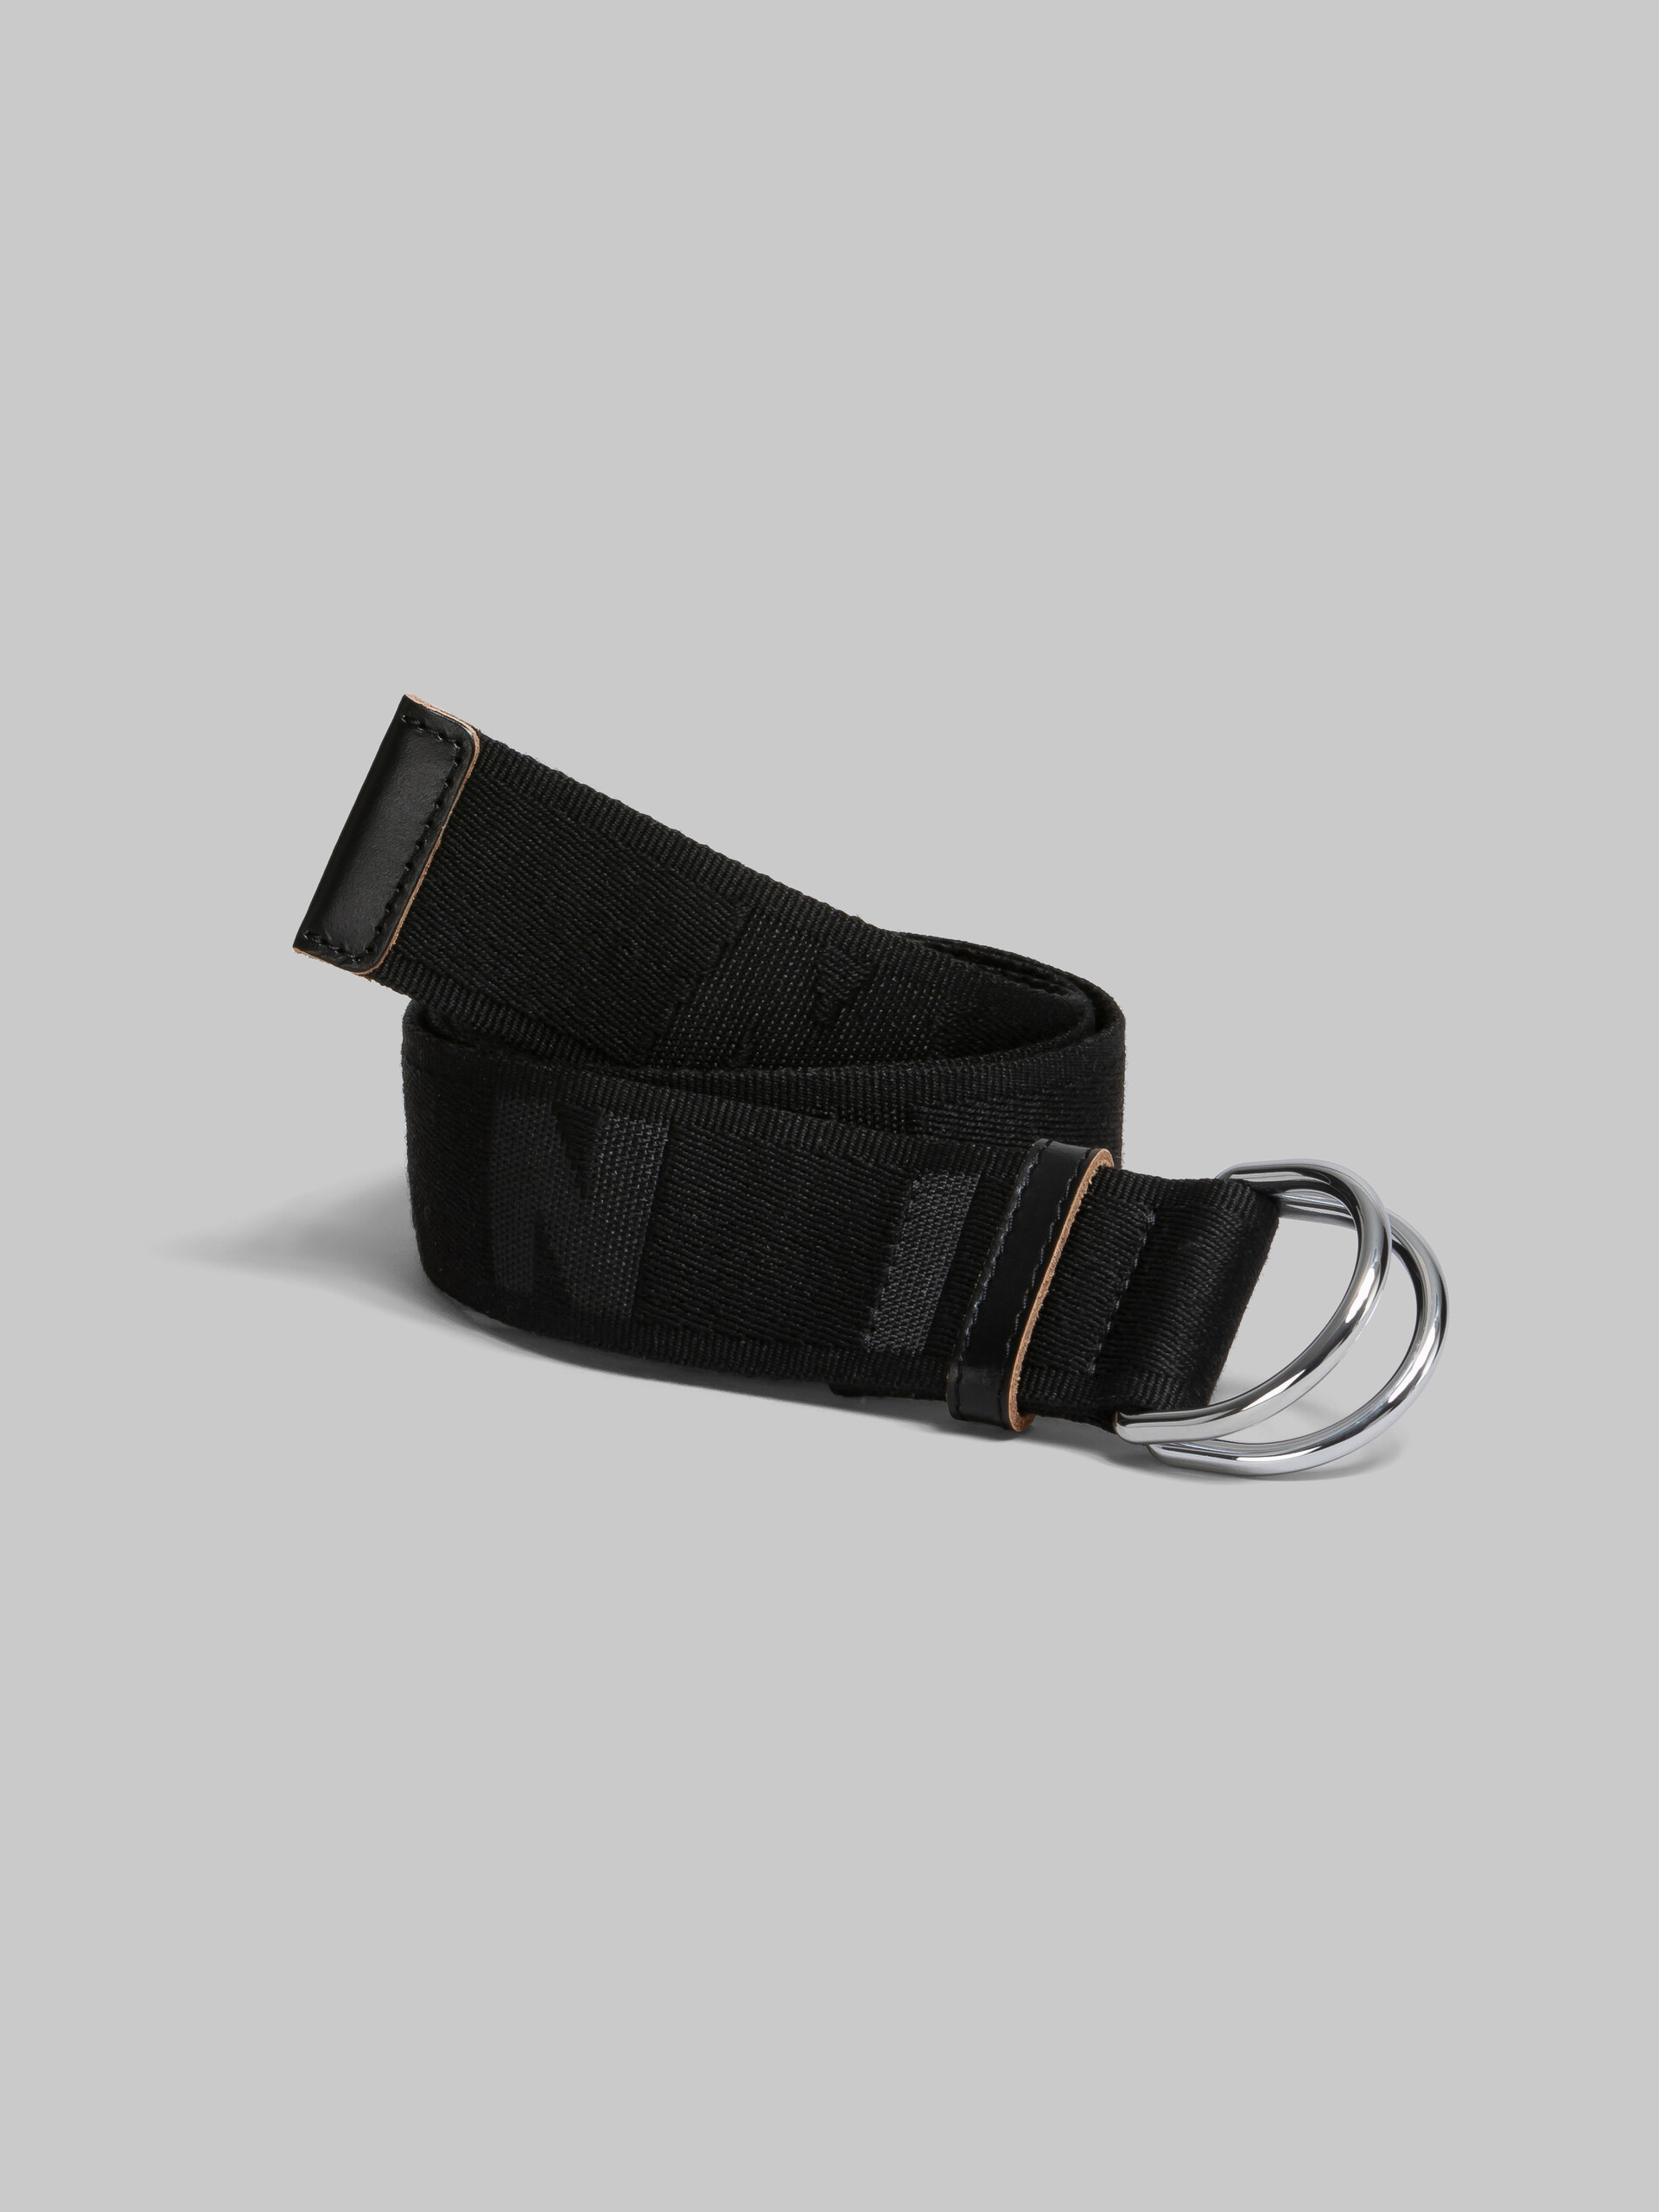 Cinturón de cinta con logotipo negro - Cinturones - Image 2